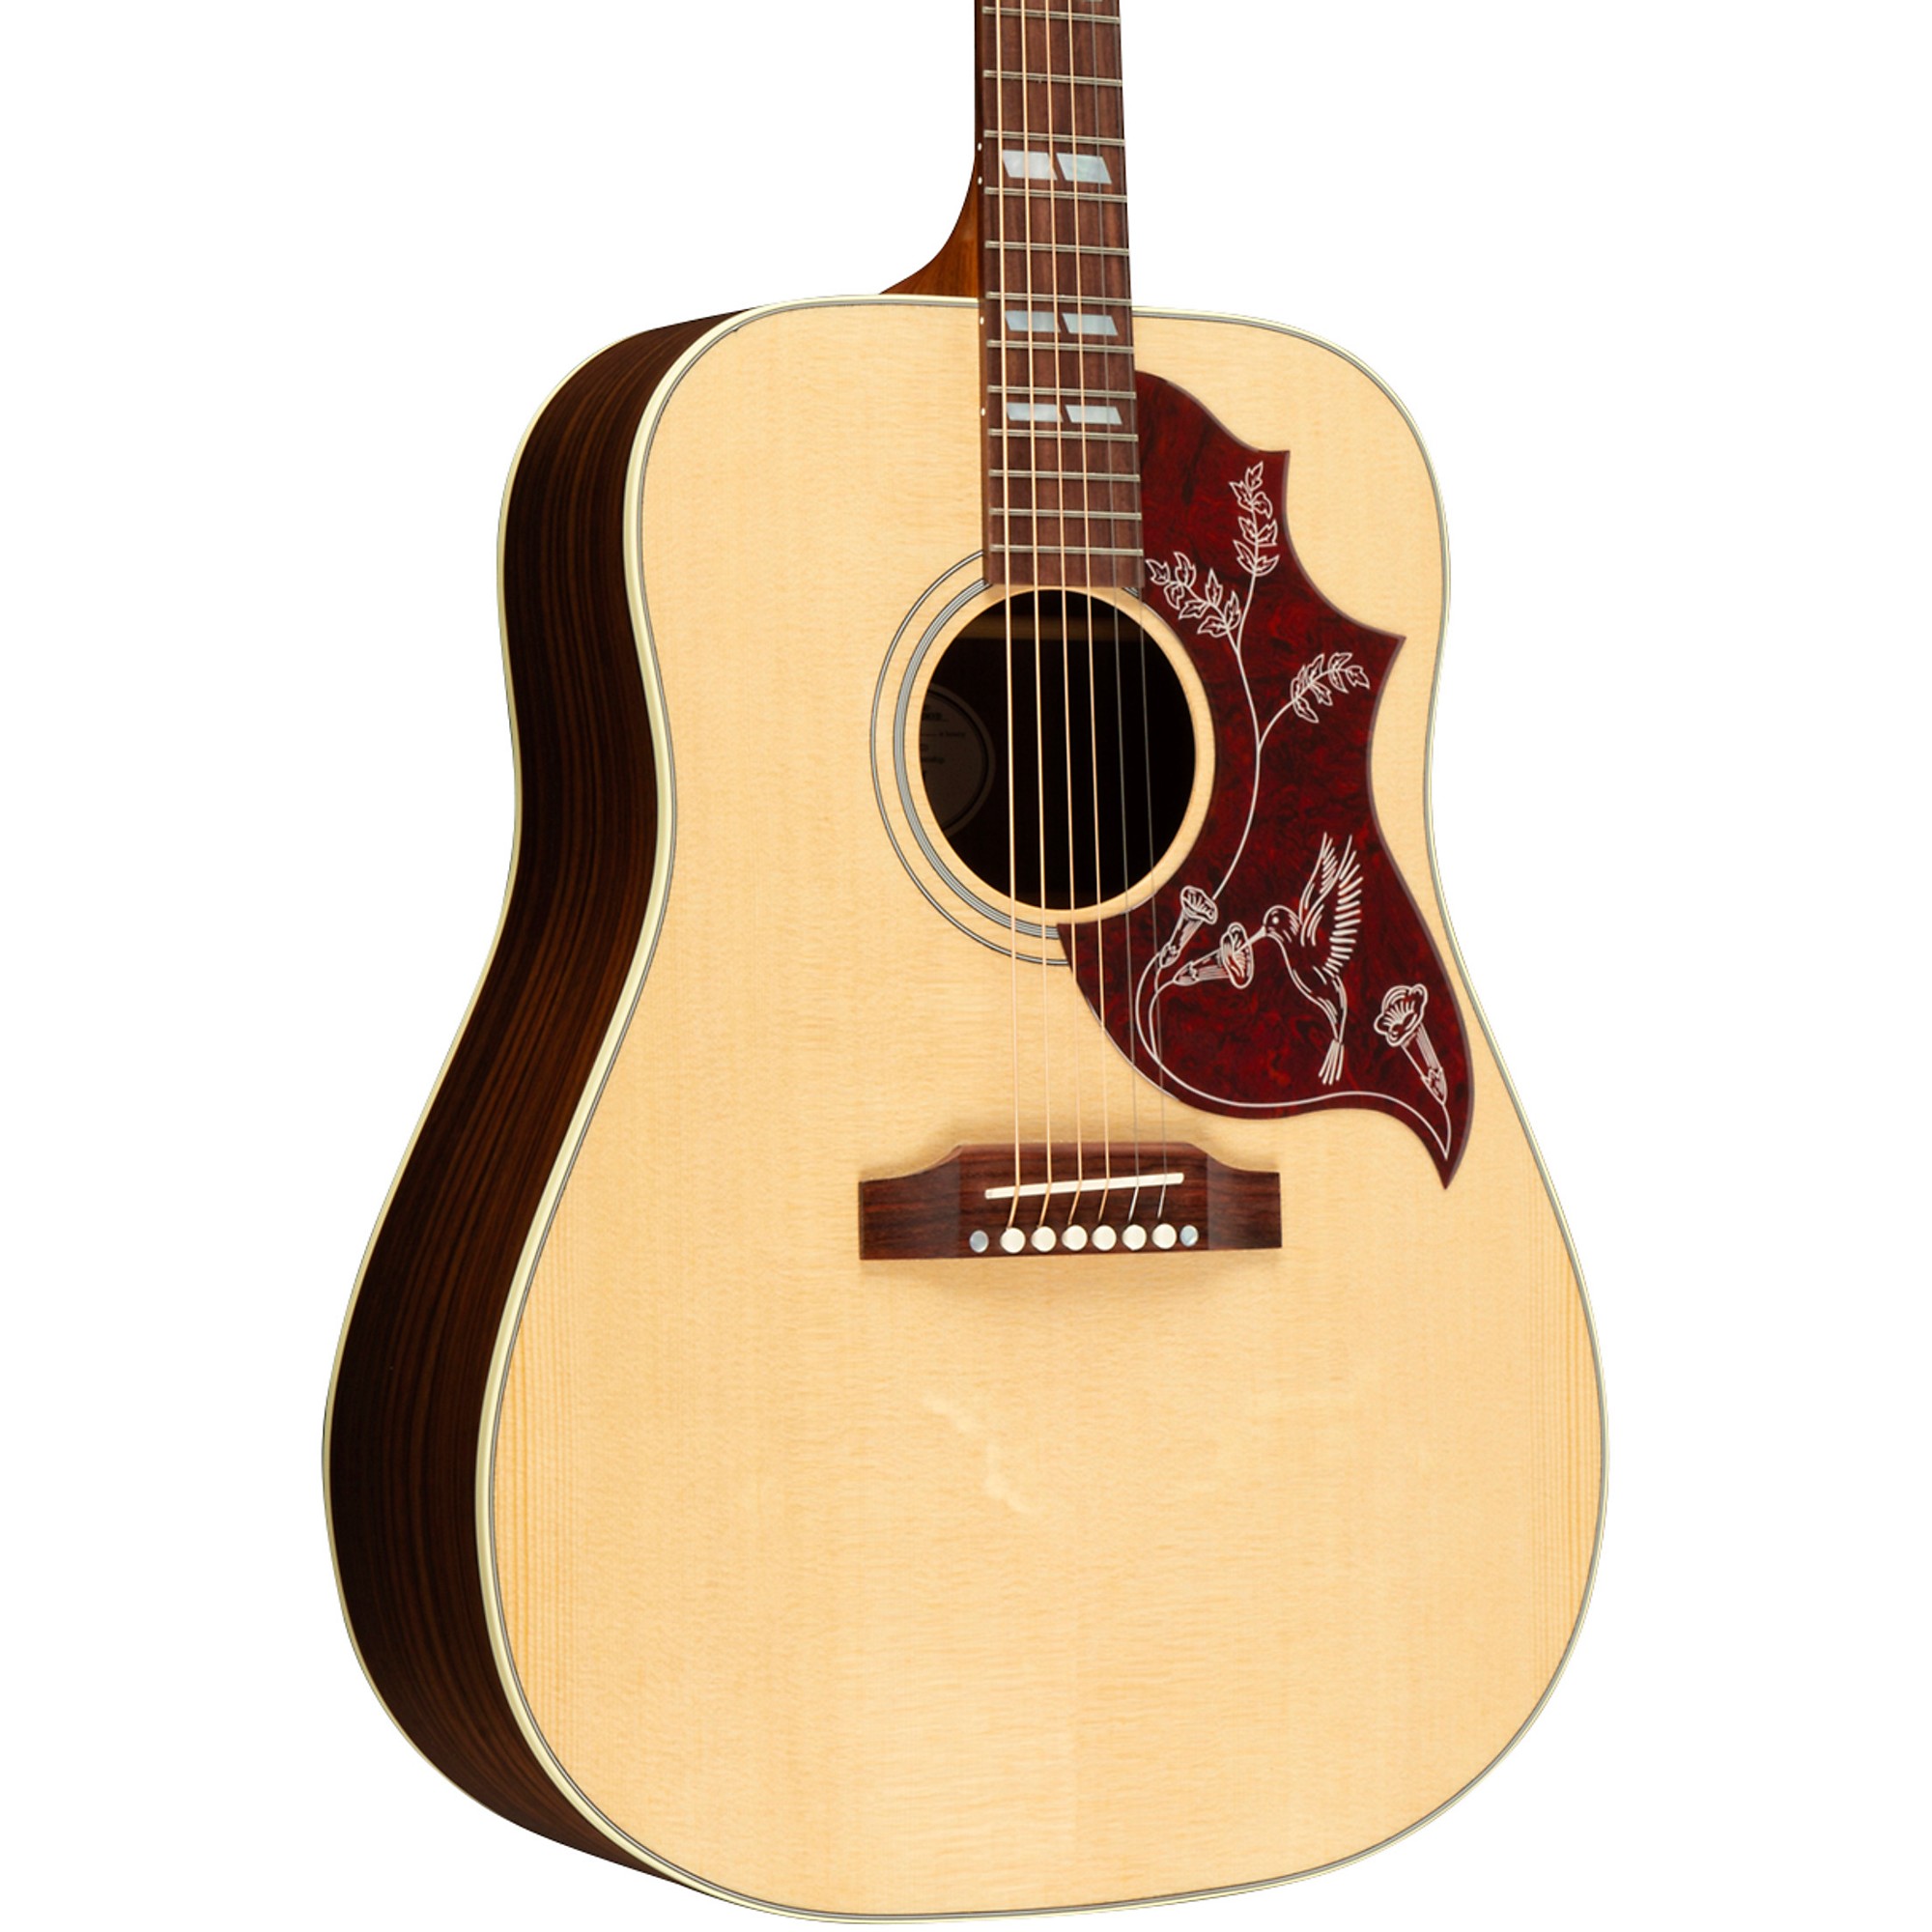 Акустически-электрическая гитара Gibson Hummingbird Studio Rosewood Natural акустически электрическая гитара gibson sj 200 studio rosewood antique natural